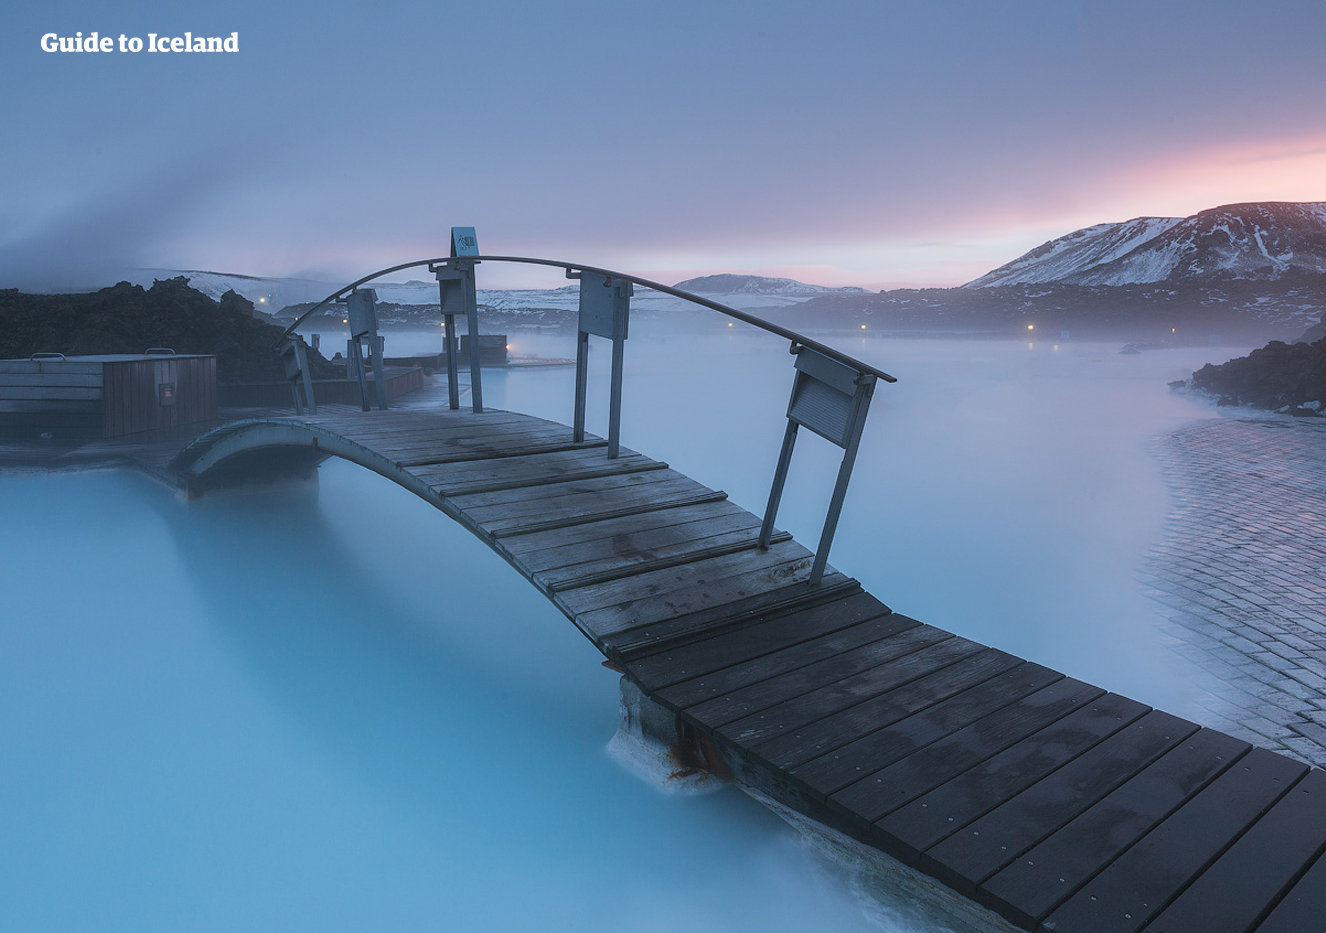 Termina tu aventura en Islandia a la perfección con un baño en el spa geotérmico de la Laguna Azul.